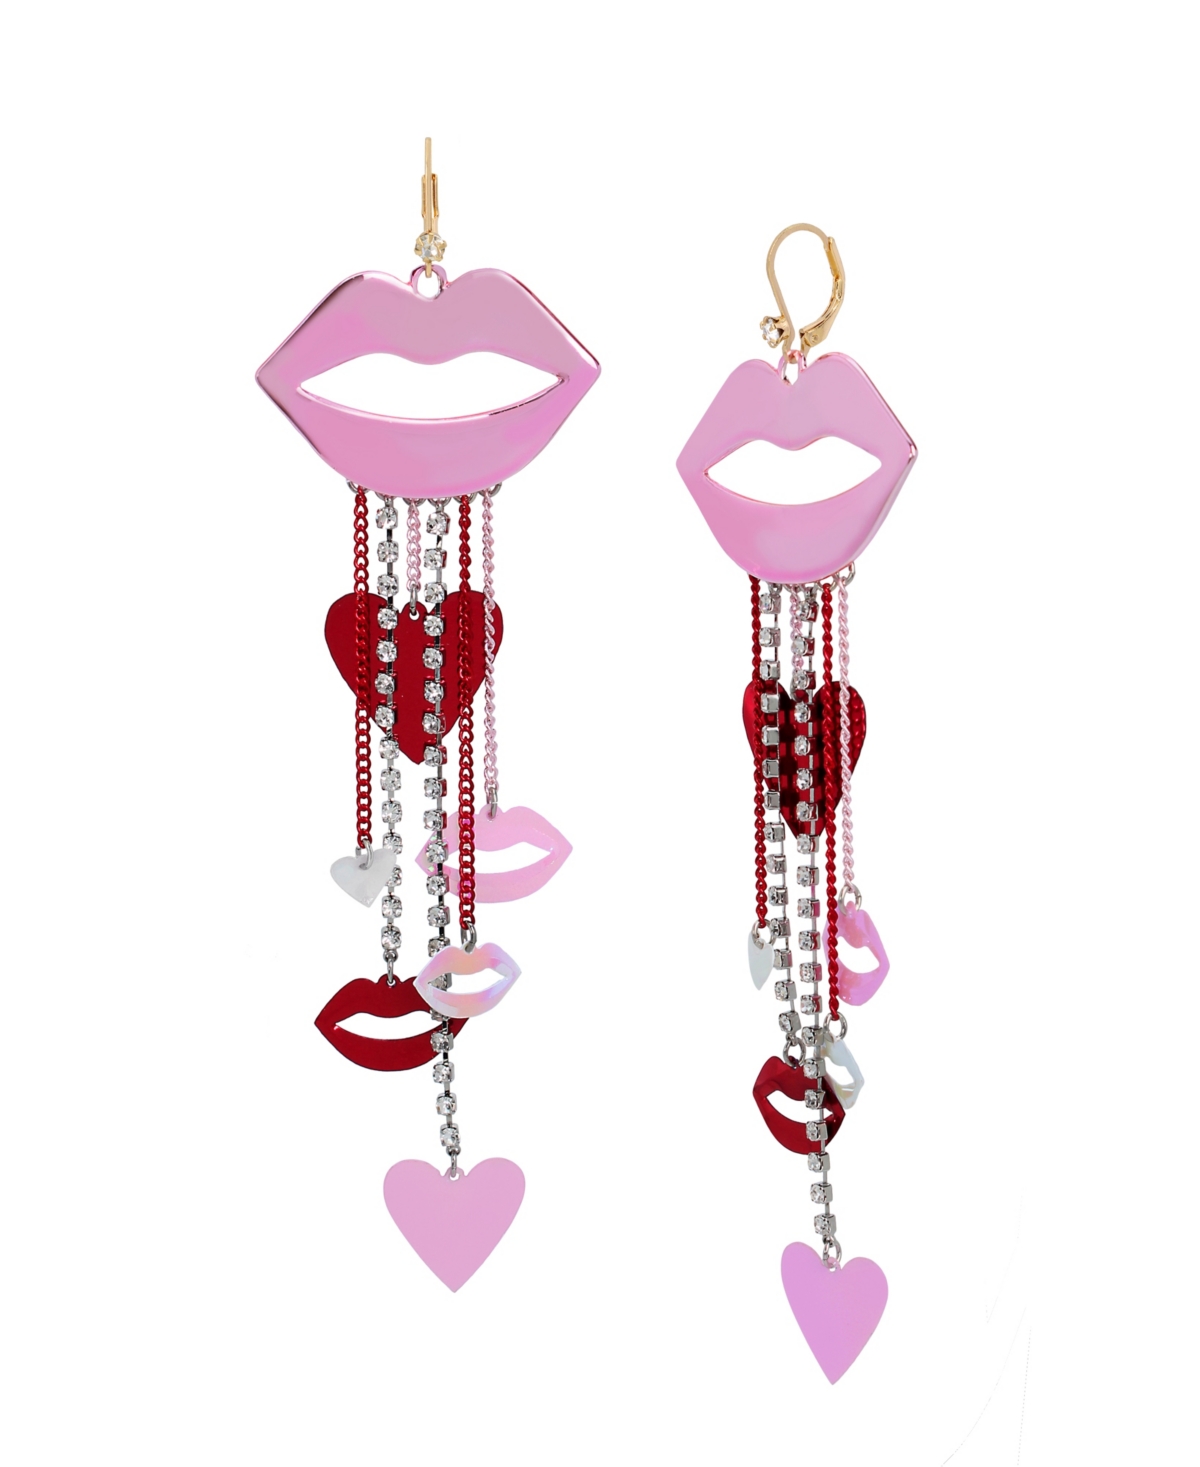 Faux Stone Lips Chandelier Earrings - Pink, Gold